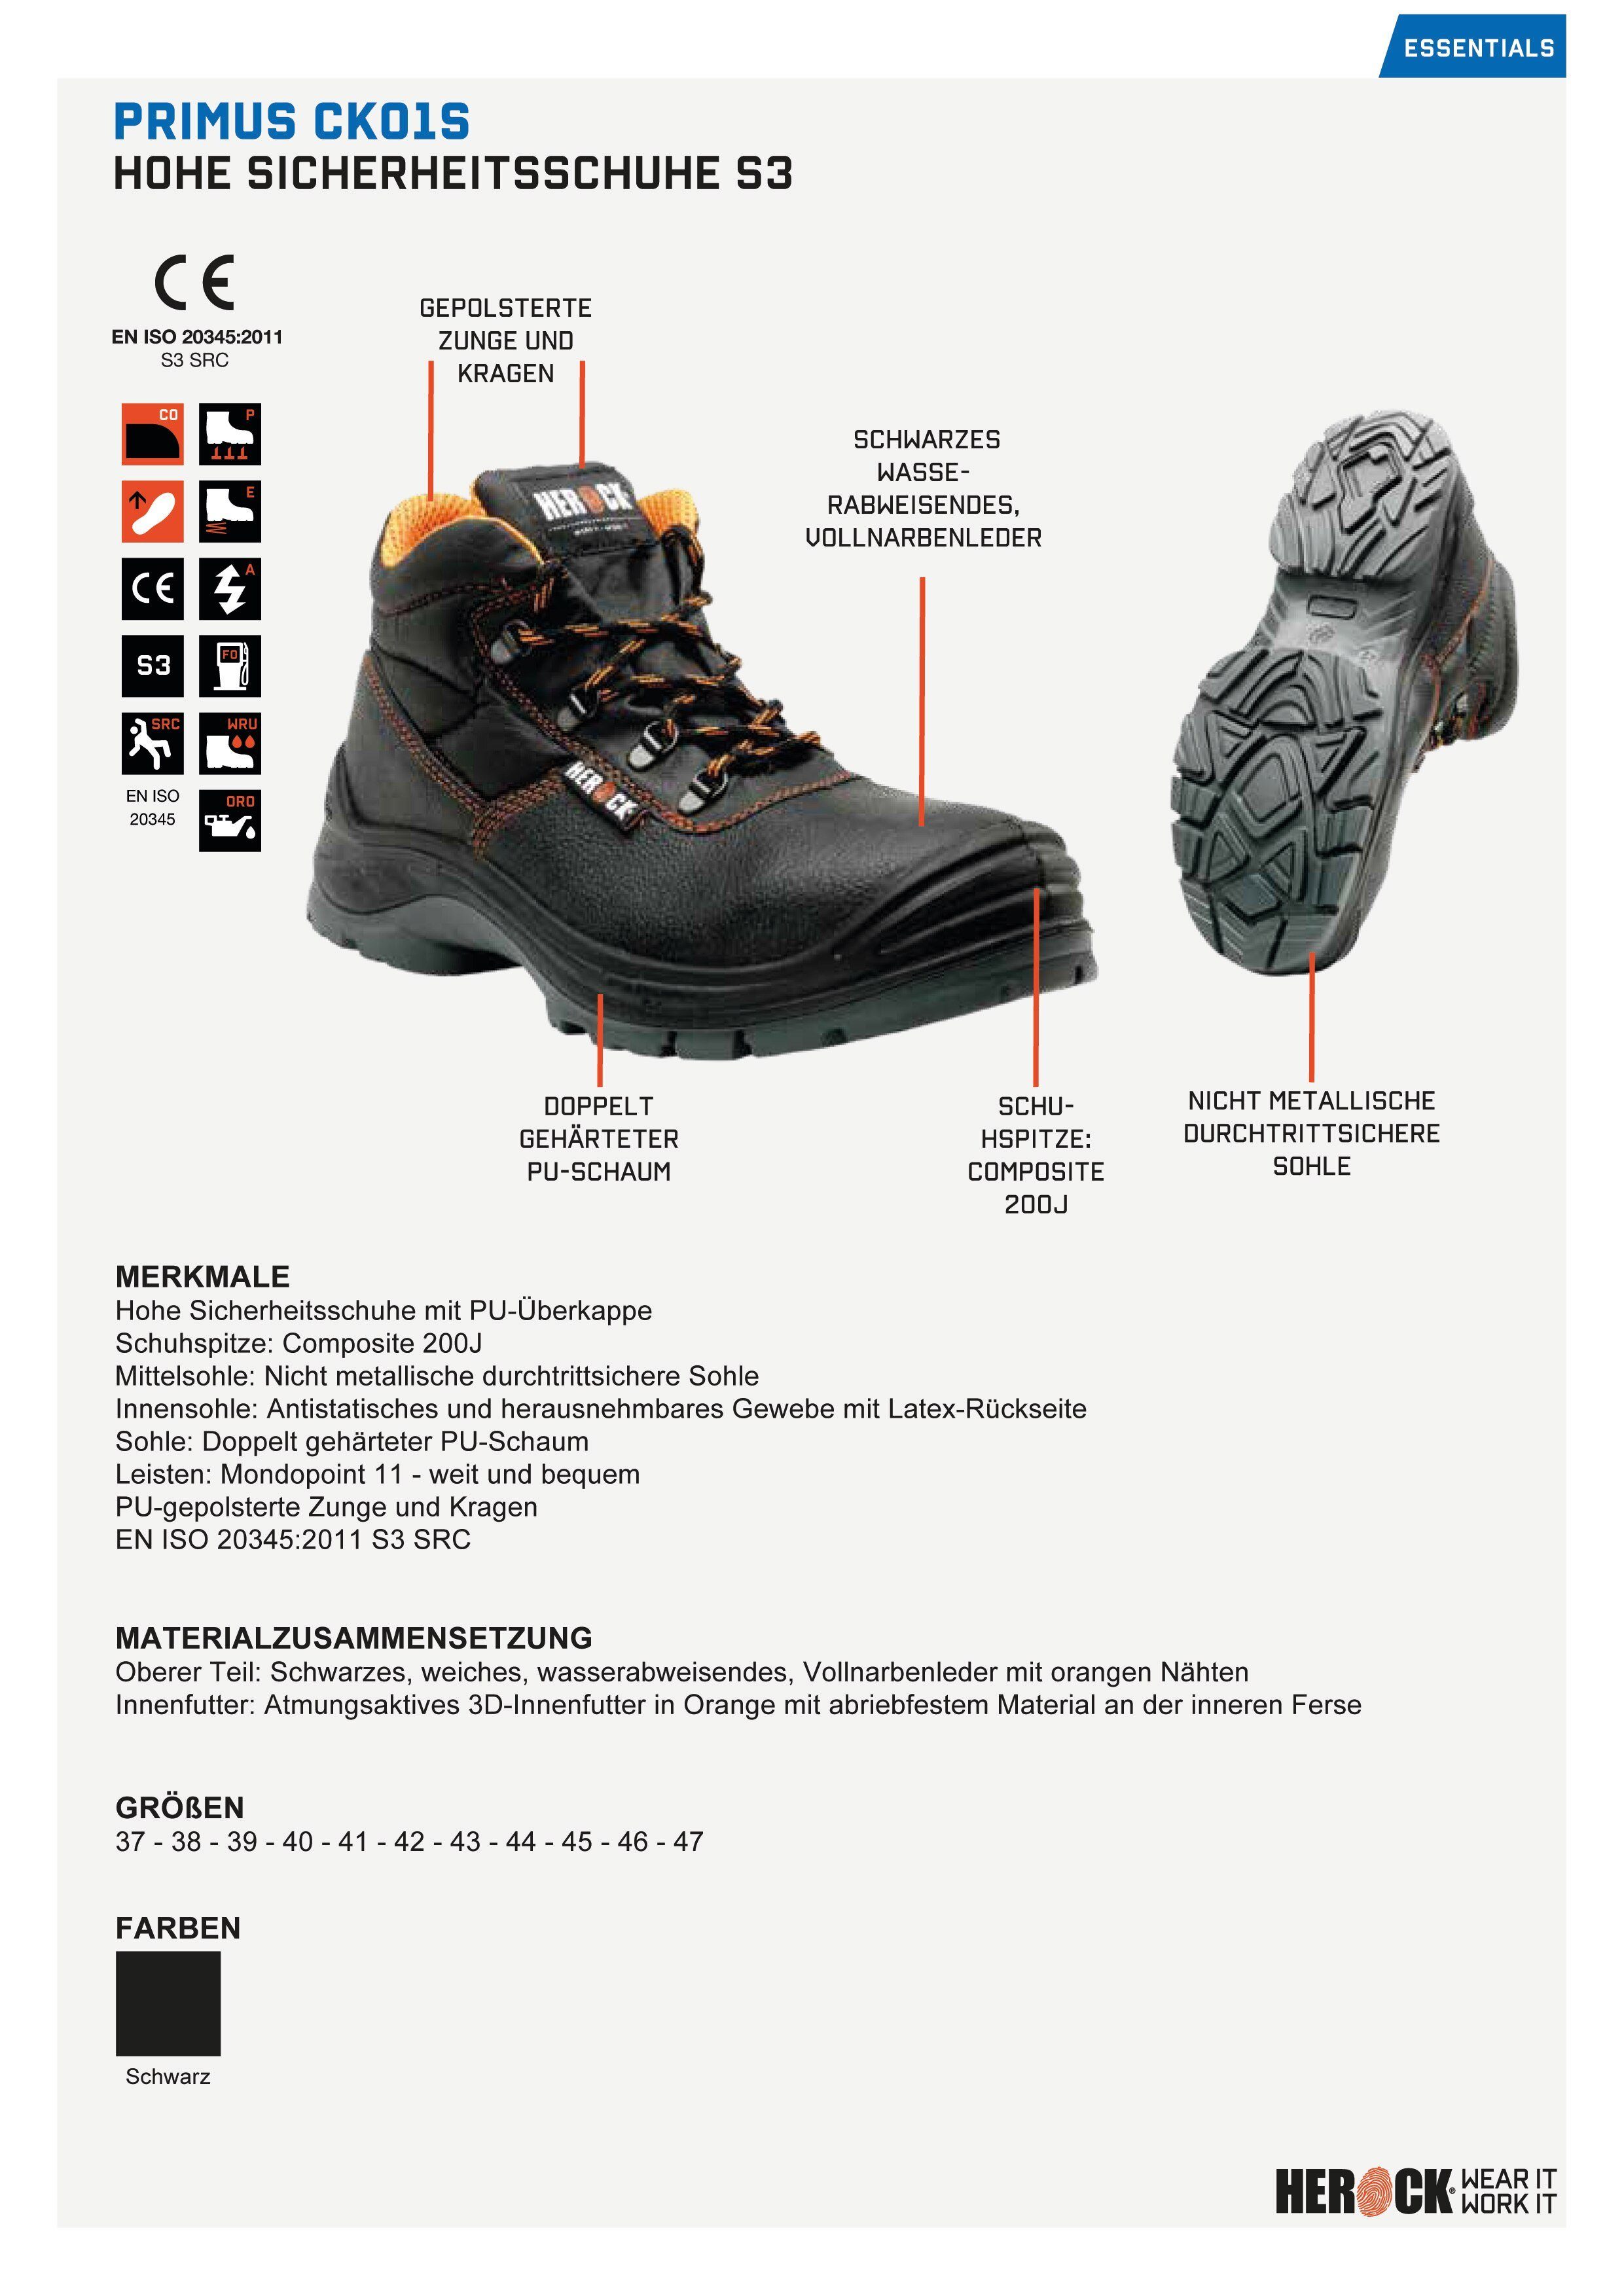 S3 Herock leicht, durchtrittsicher Schuhe Compo High und Klasse PU-Überkappe, Primus bequem, S3, Sicherheitsschuh weit